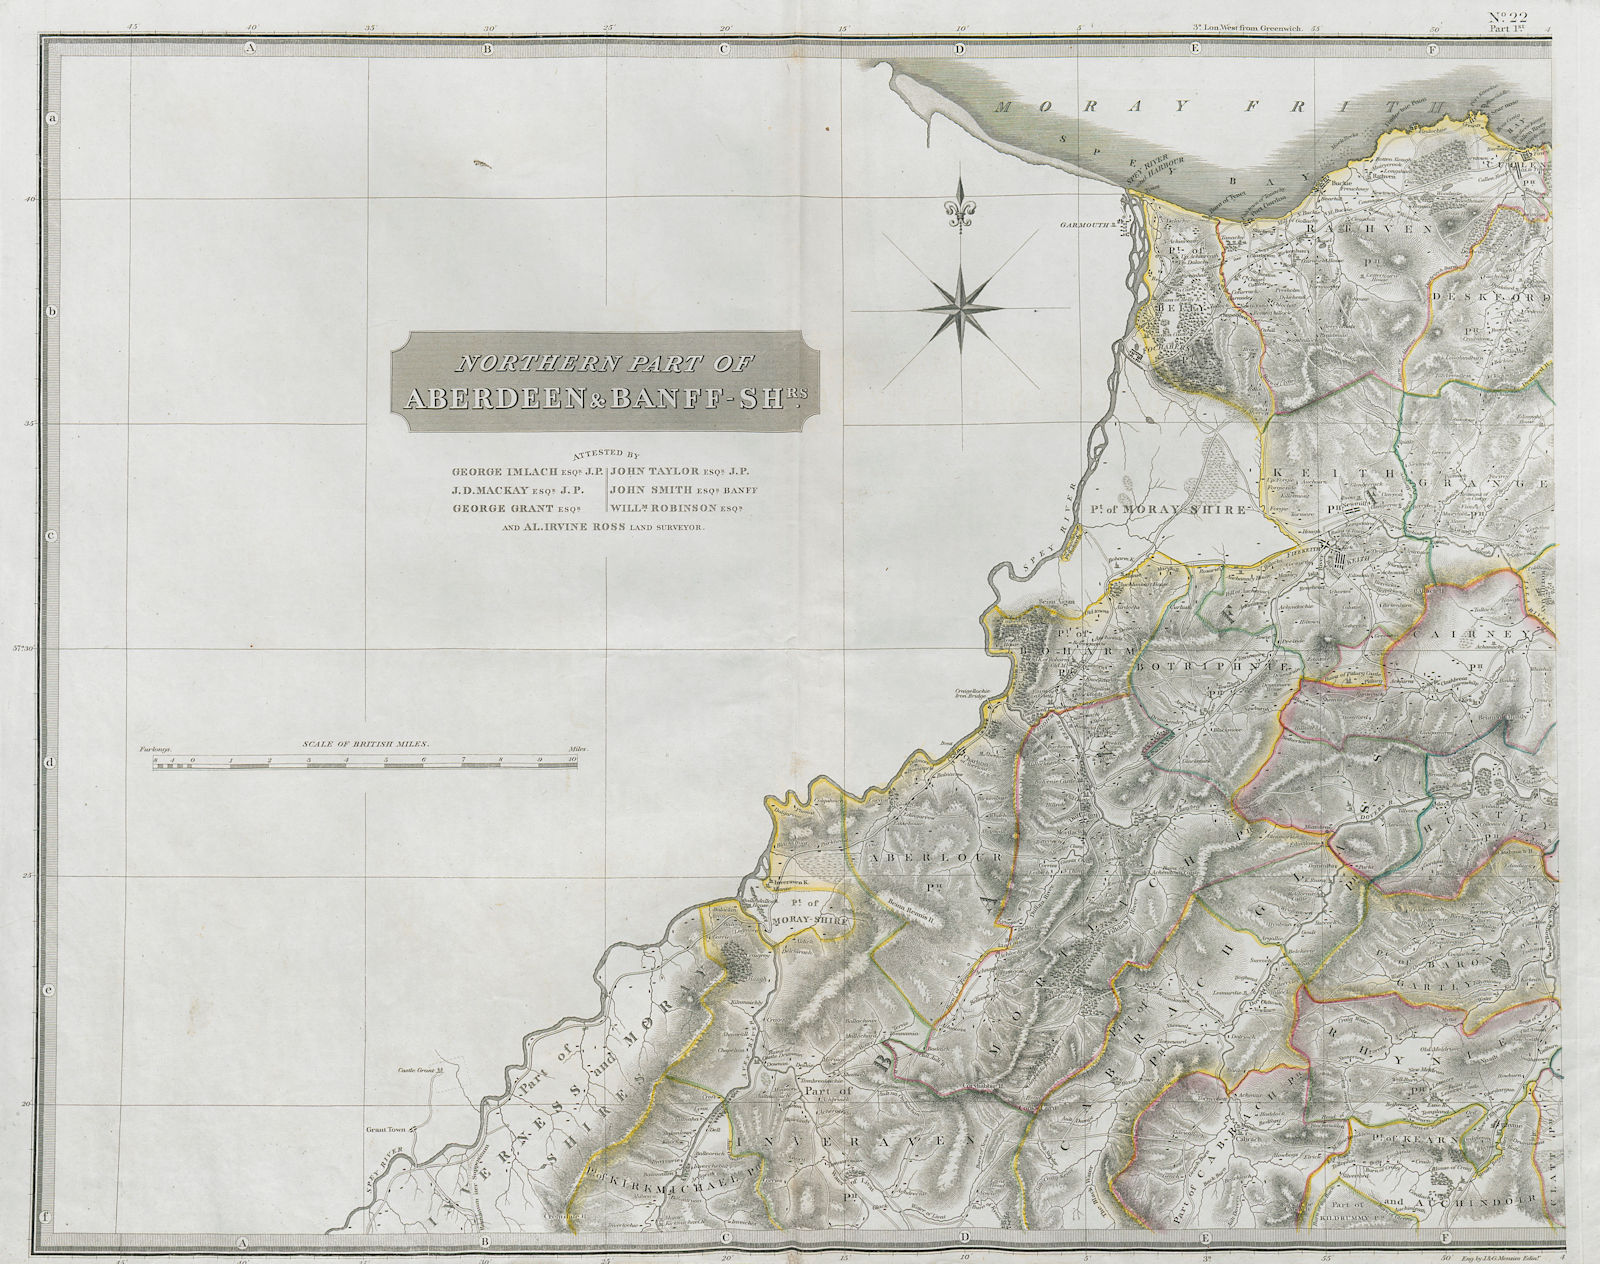 Aberdeen & Banffshires north-west. Speyside. Cullen Dufftown. THOMSON 1832 map